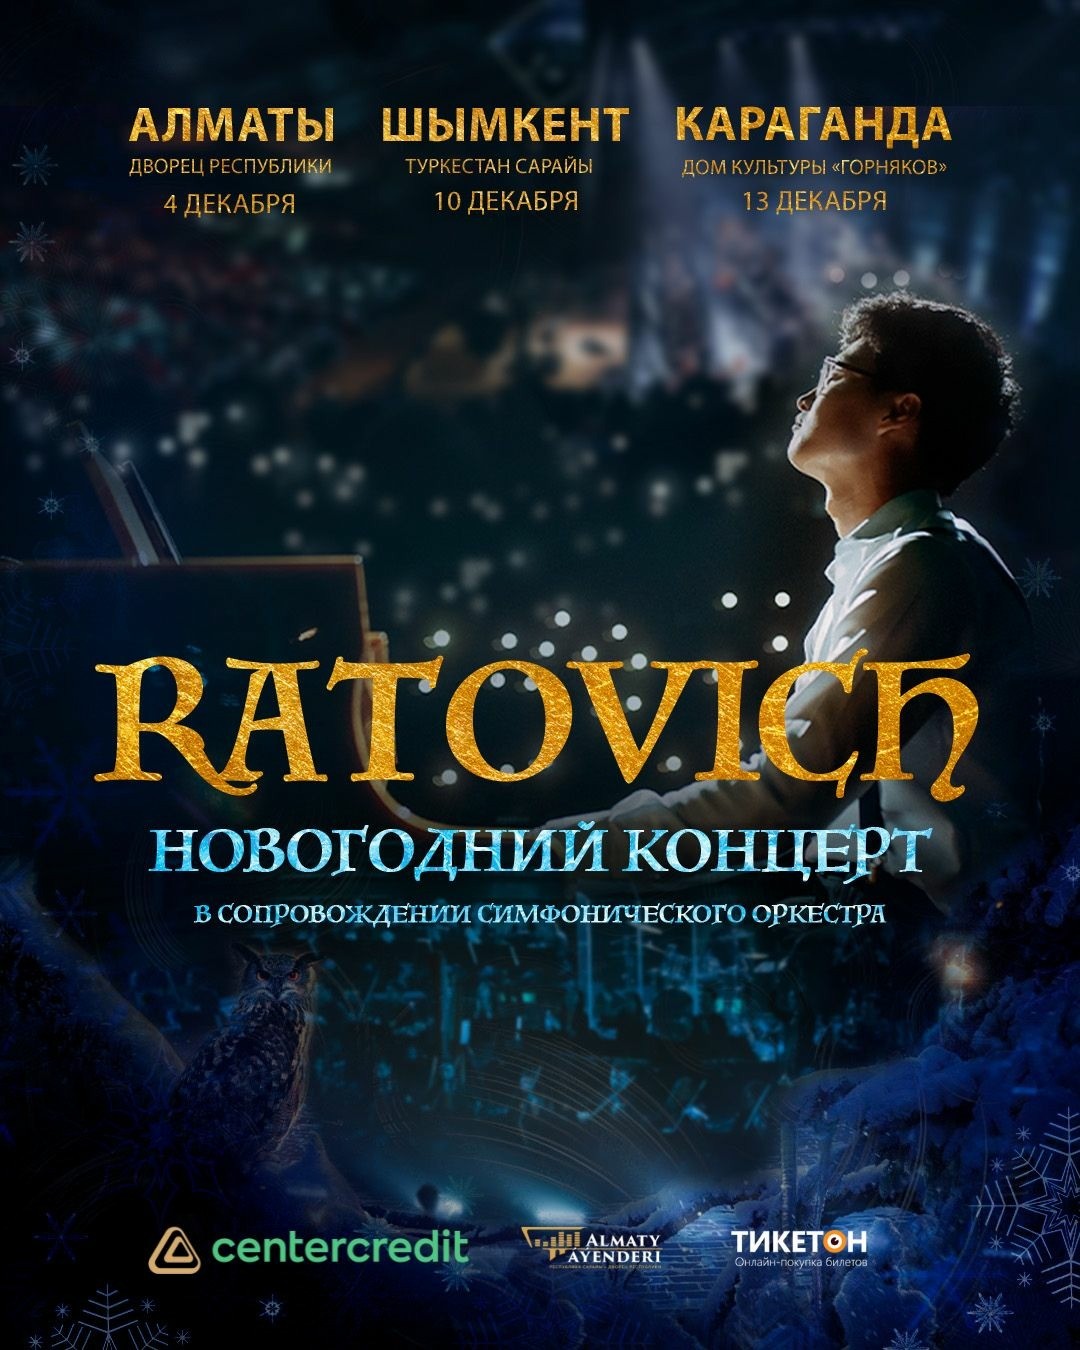 Ratovich «Новогодний концерт» в Караганде